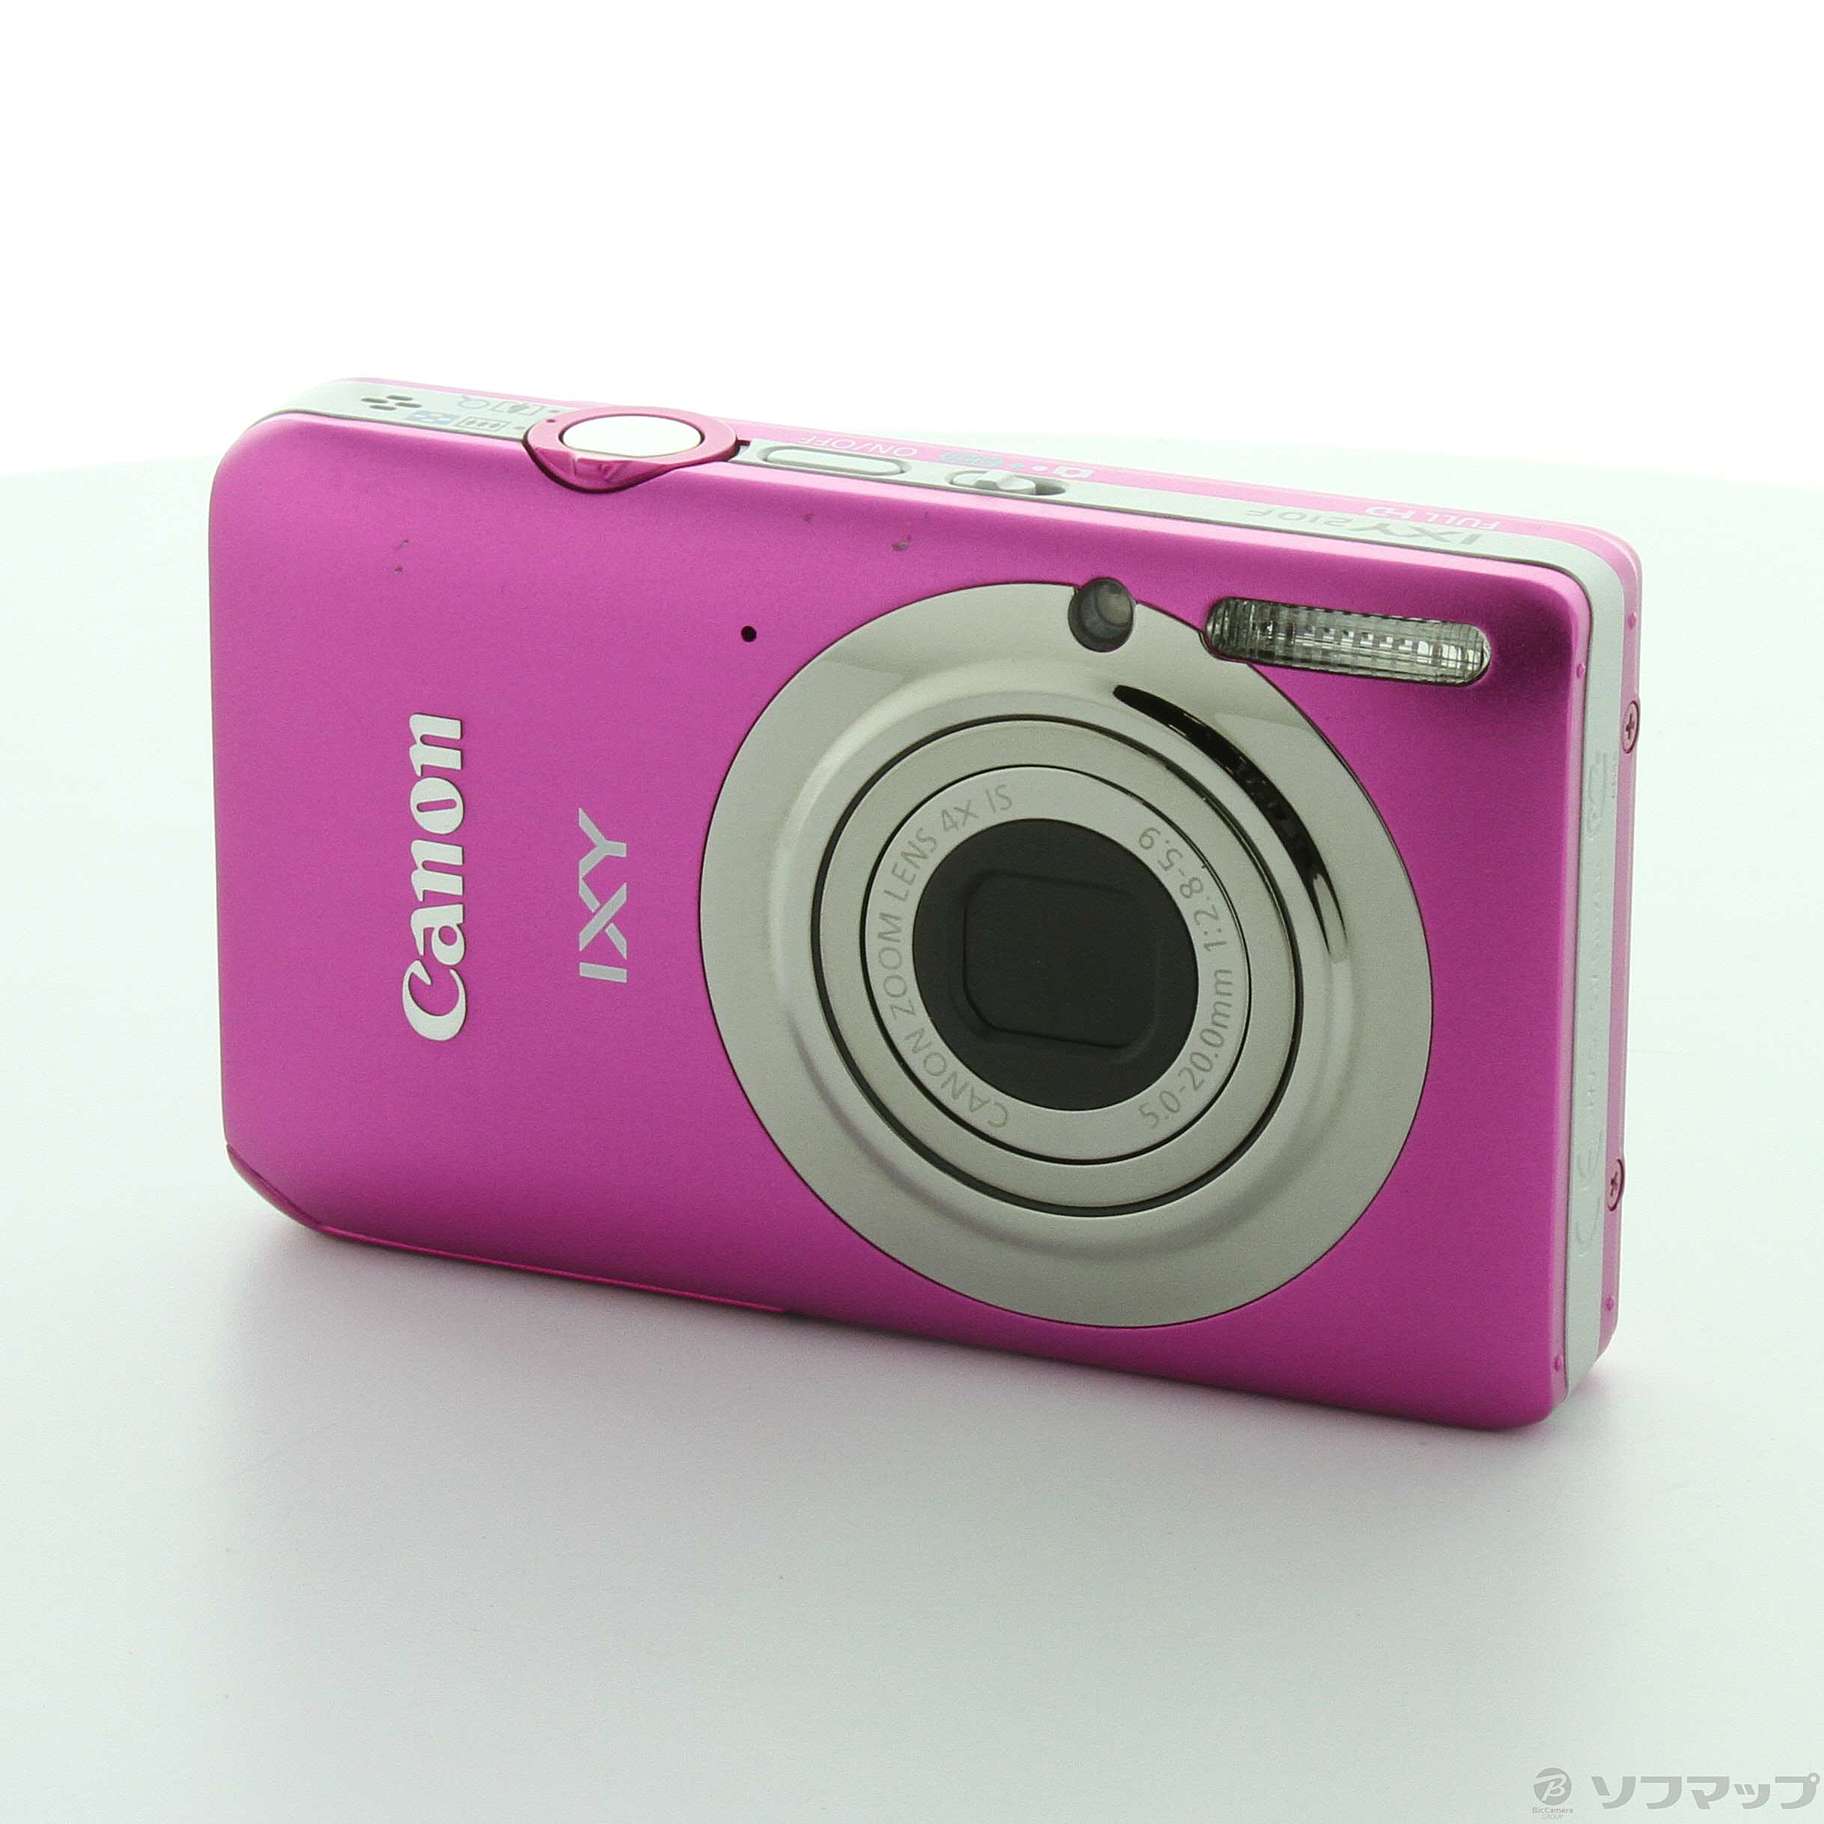  Canon デジタルカメラ IXY 210F ピンク IXY210F PK